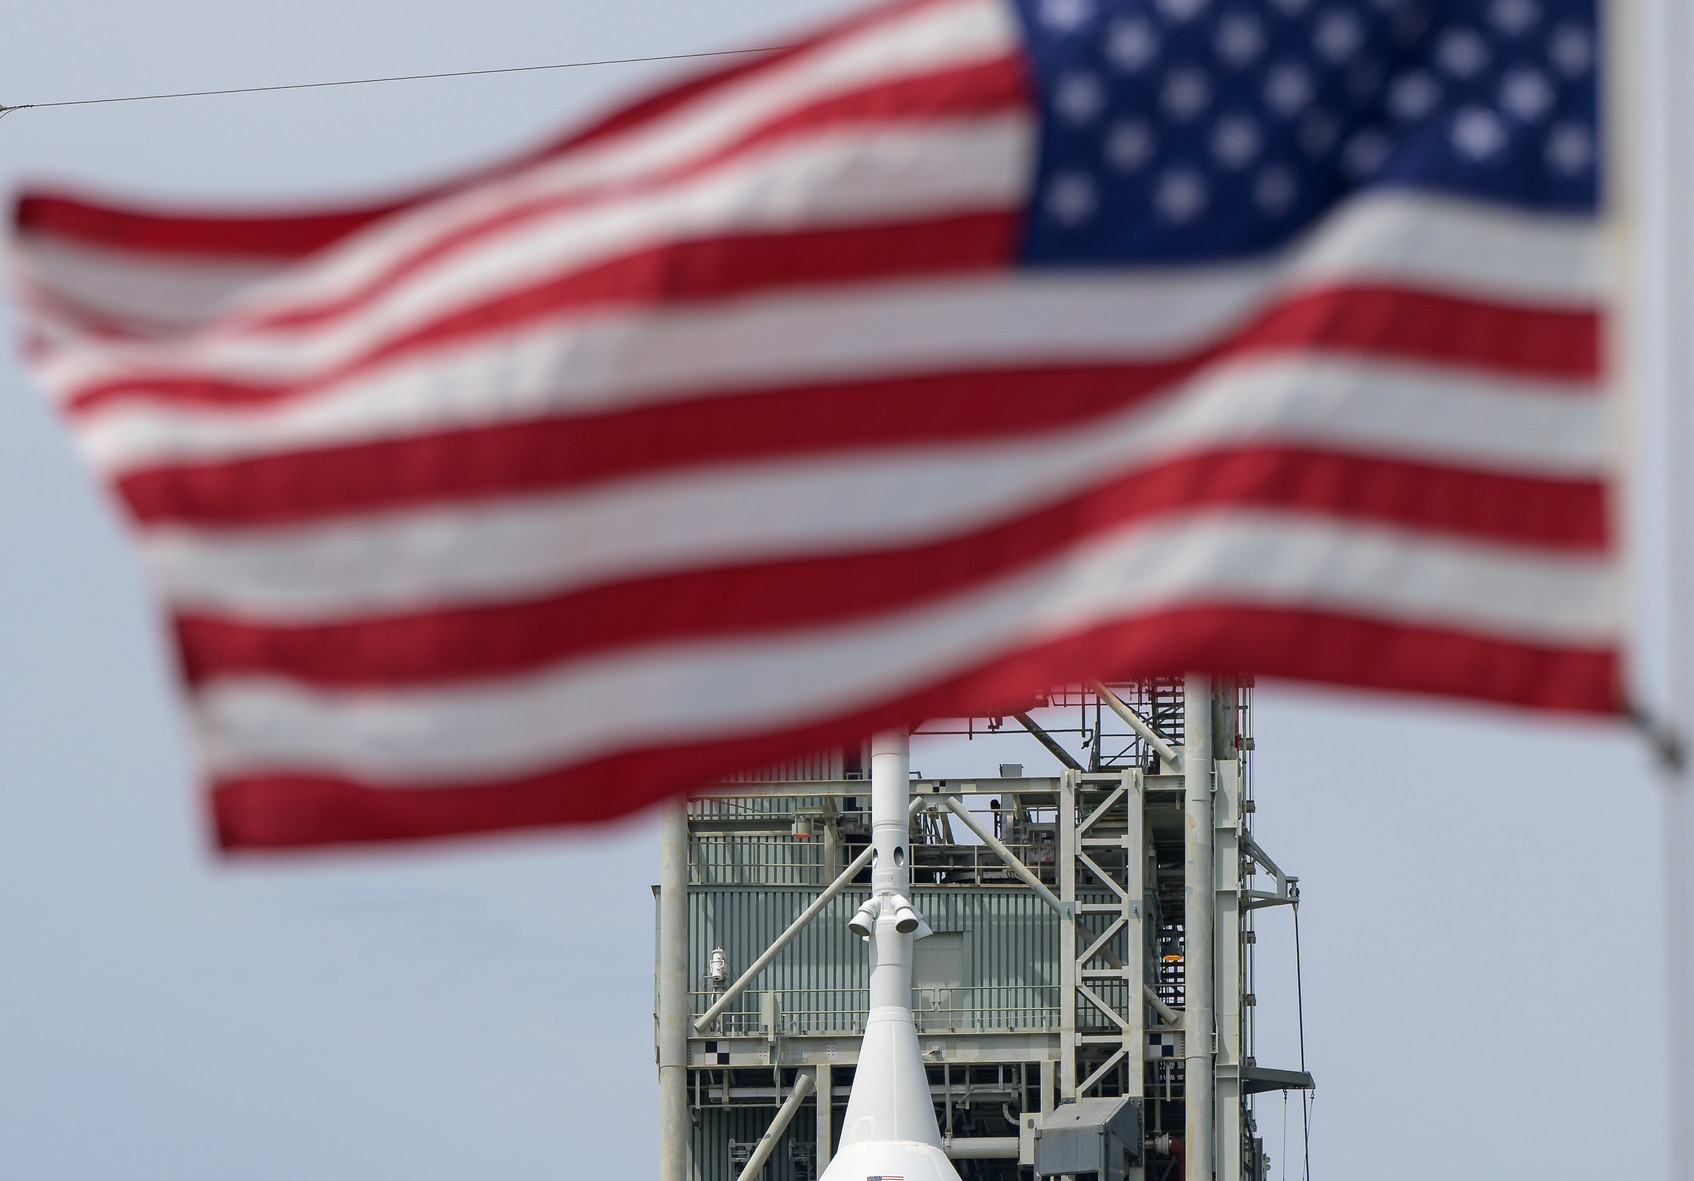 Місячна місія Artemis 1 готується до старту з космічного центру Кеннеді у Флориді – фото